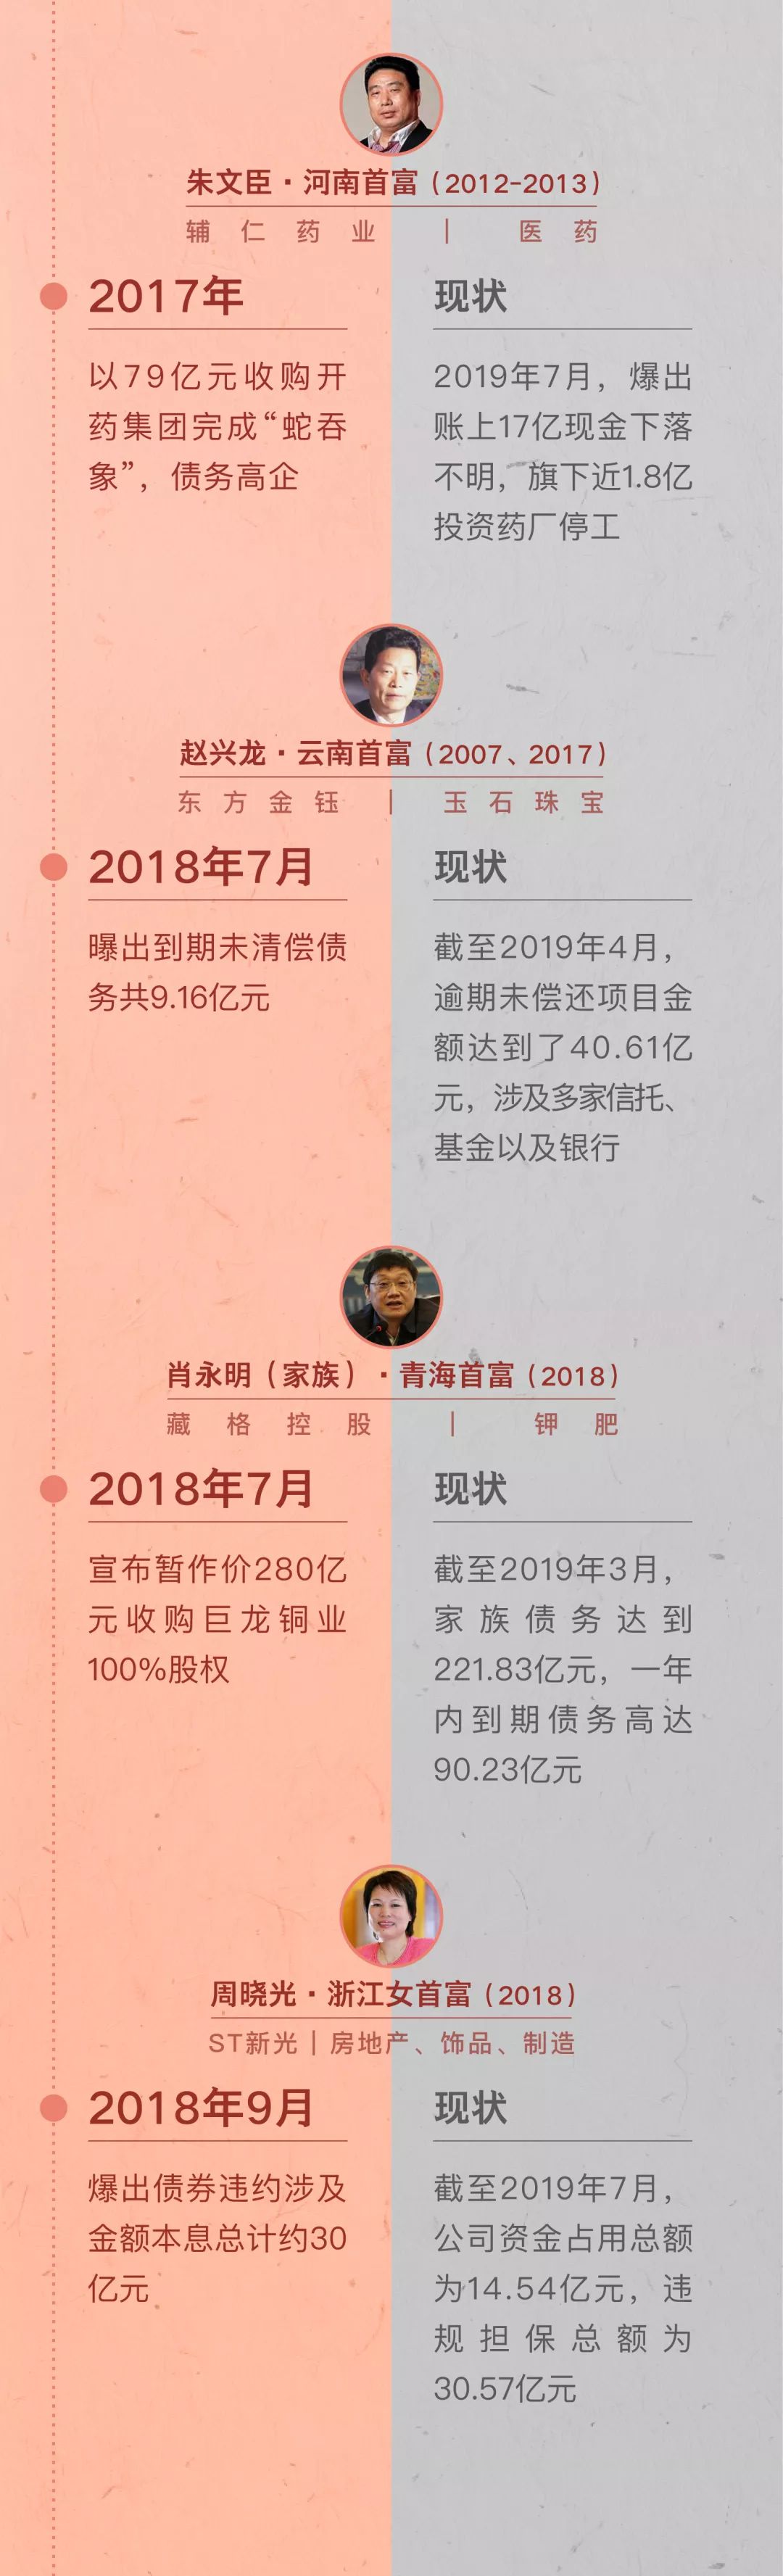 义乌千里马人才网招聘（2019）